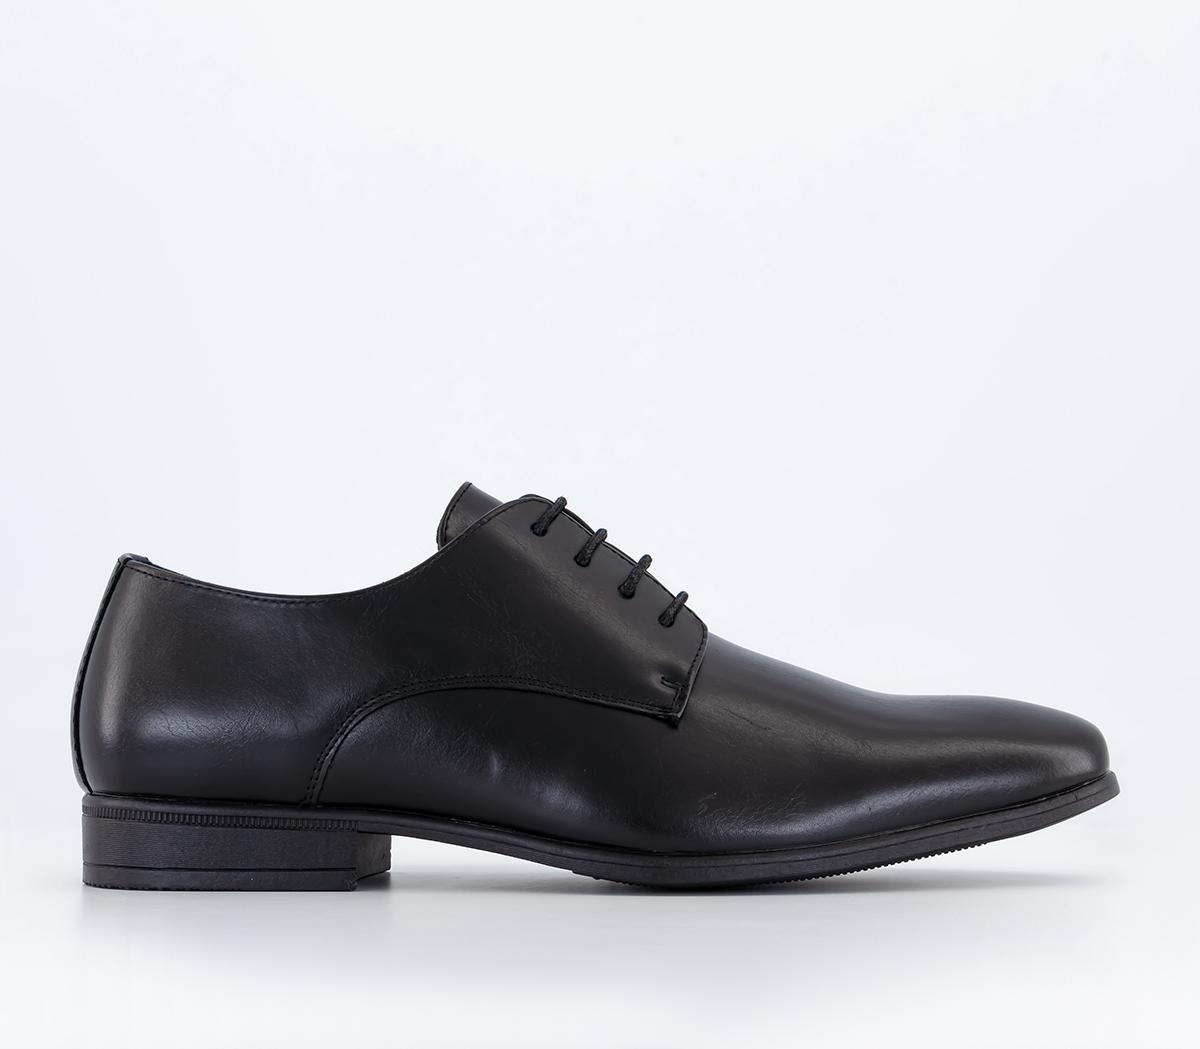 OFFICE Monroe Derby Shoes Black - Men’s Smart Shoes